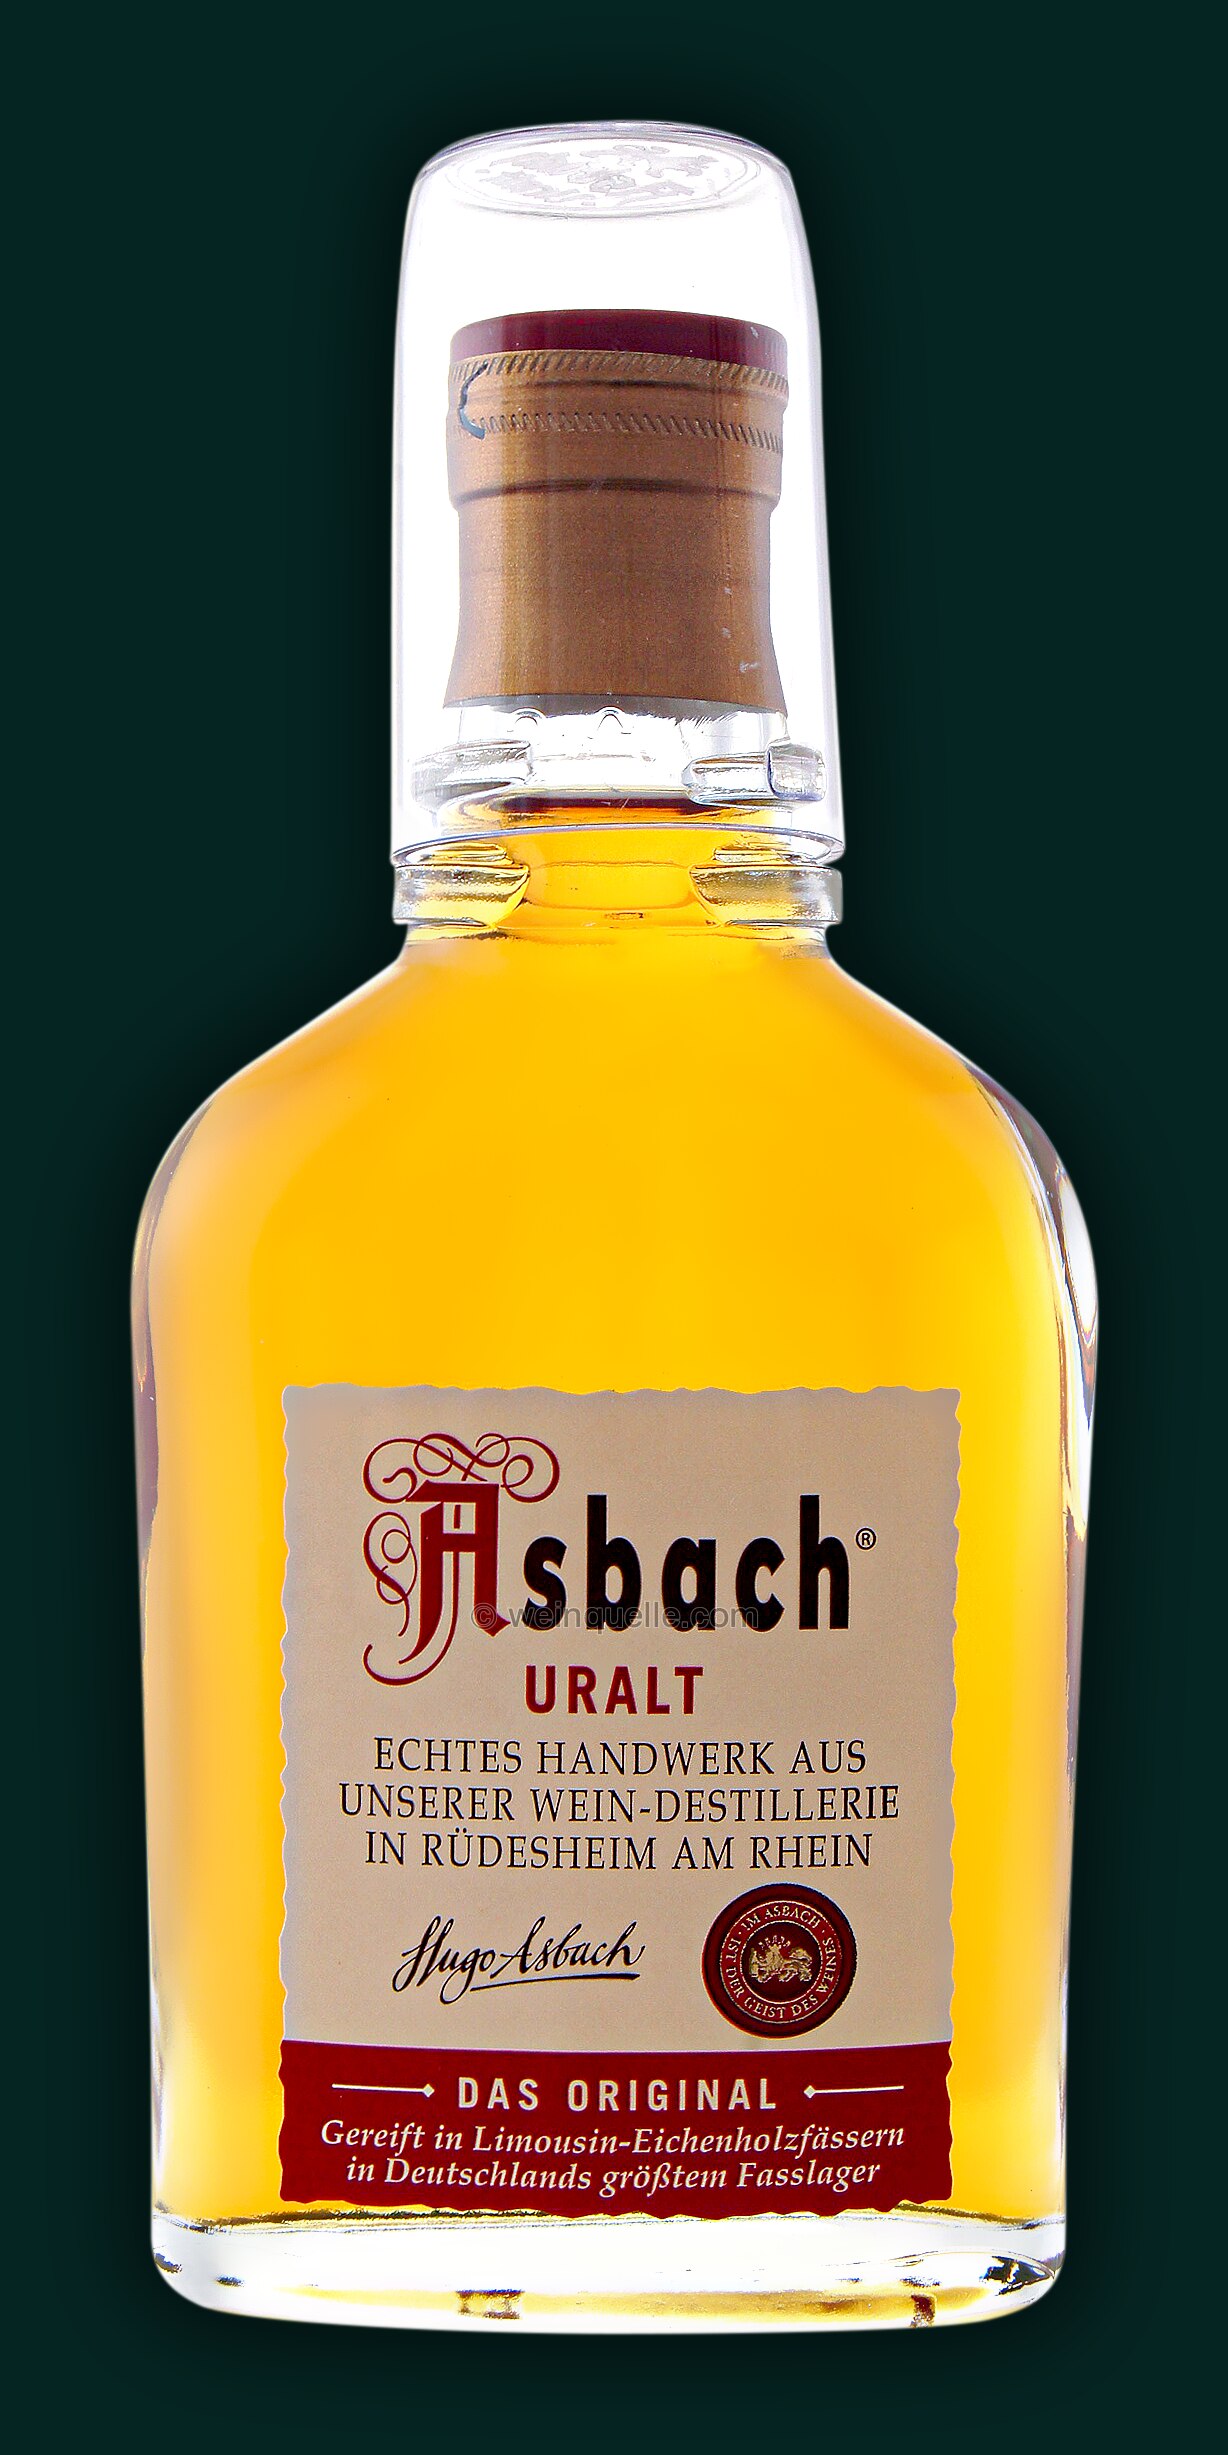 Asbach Uralt 0,1 Lühmann - Liter, Weinquelle € 2,95